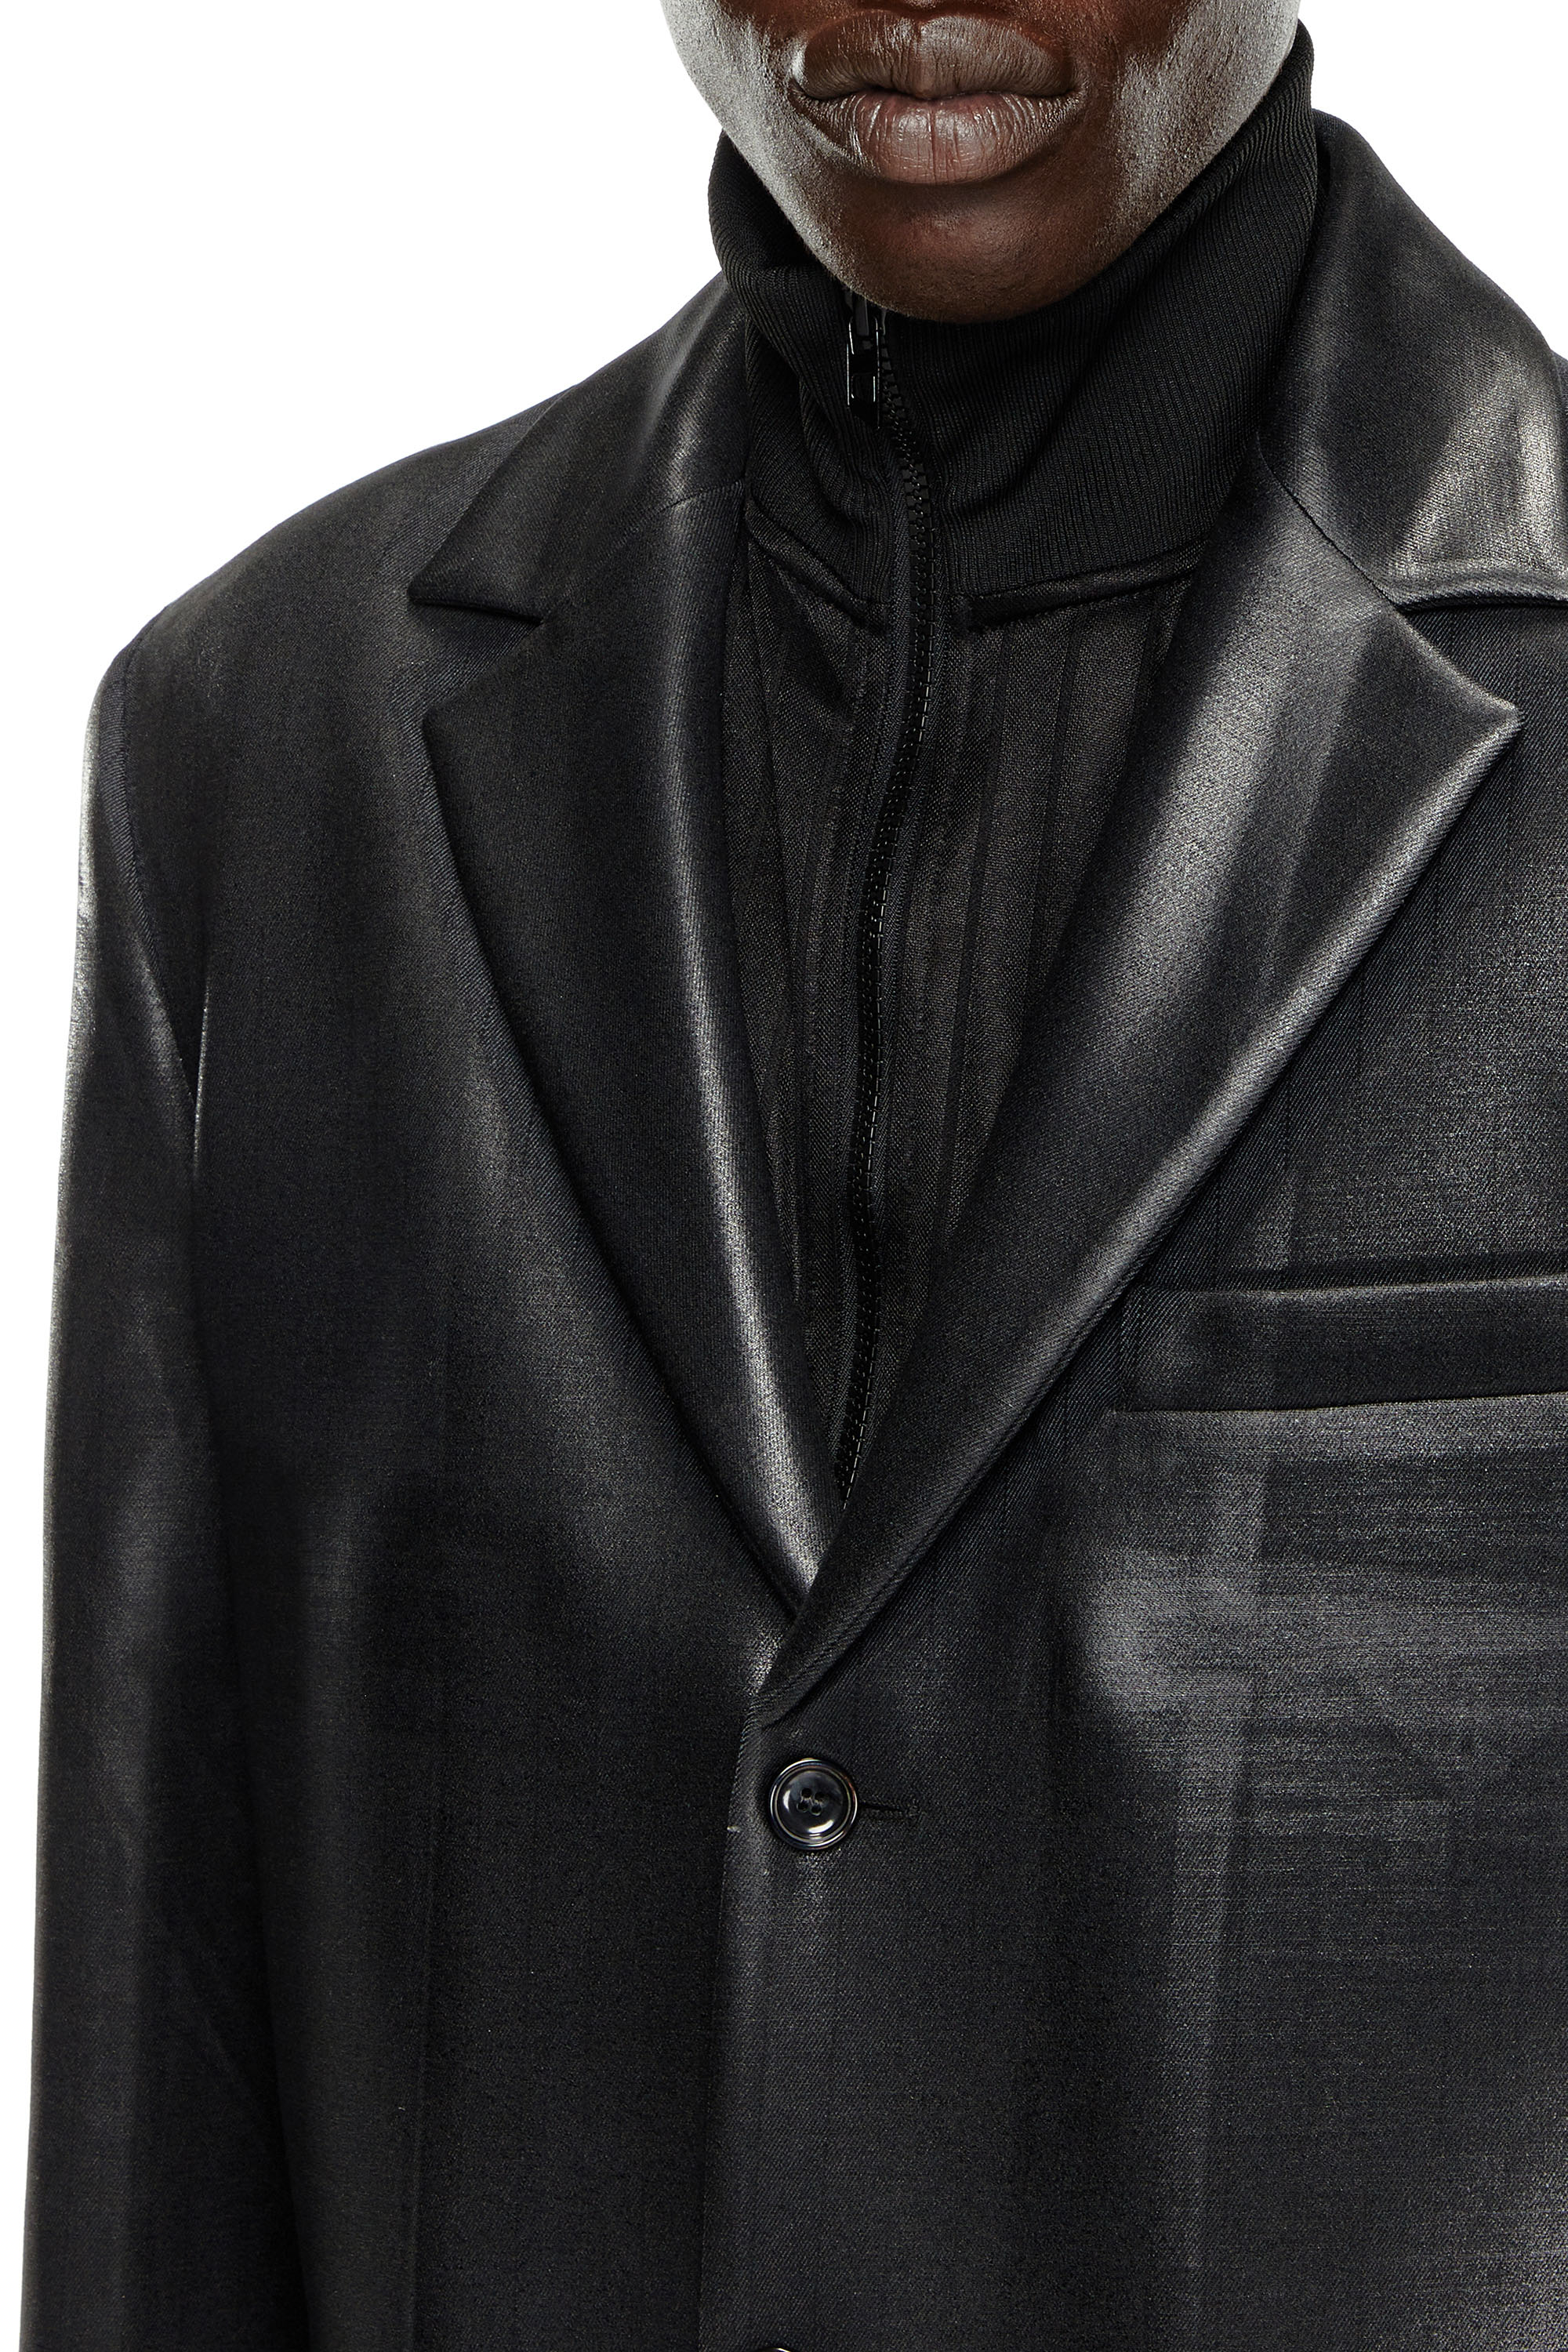 Diesel - J-DENNER, Male Coat in pinstriped cool wool in Black - Image 5